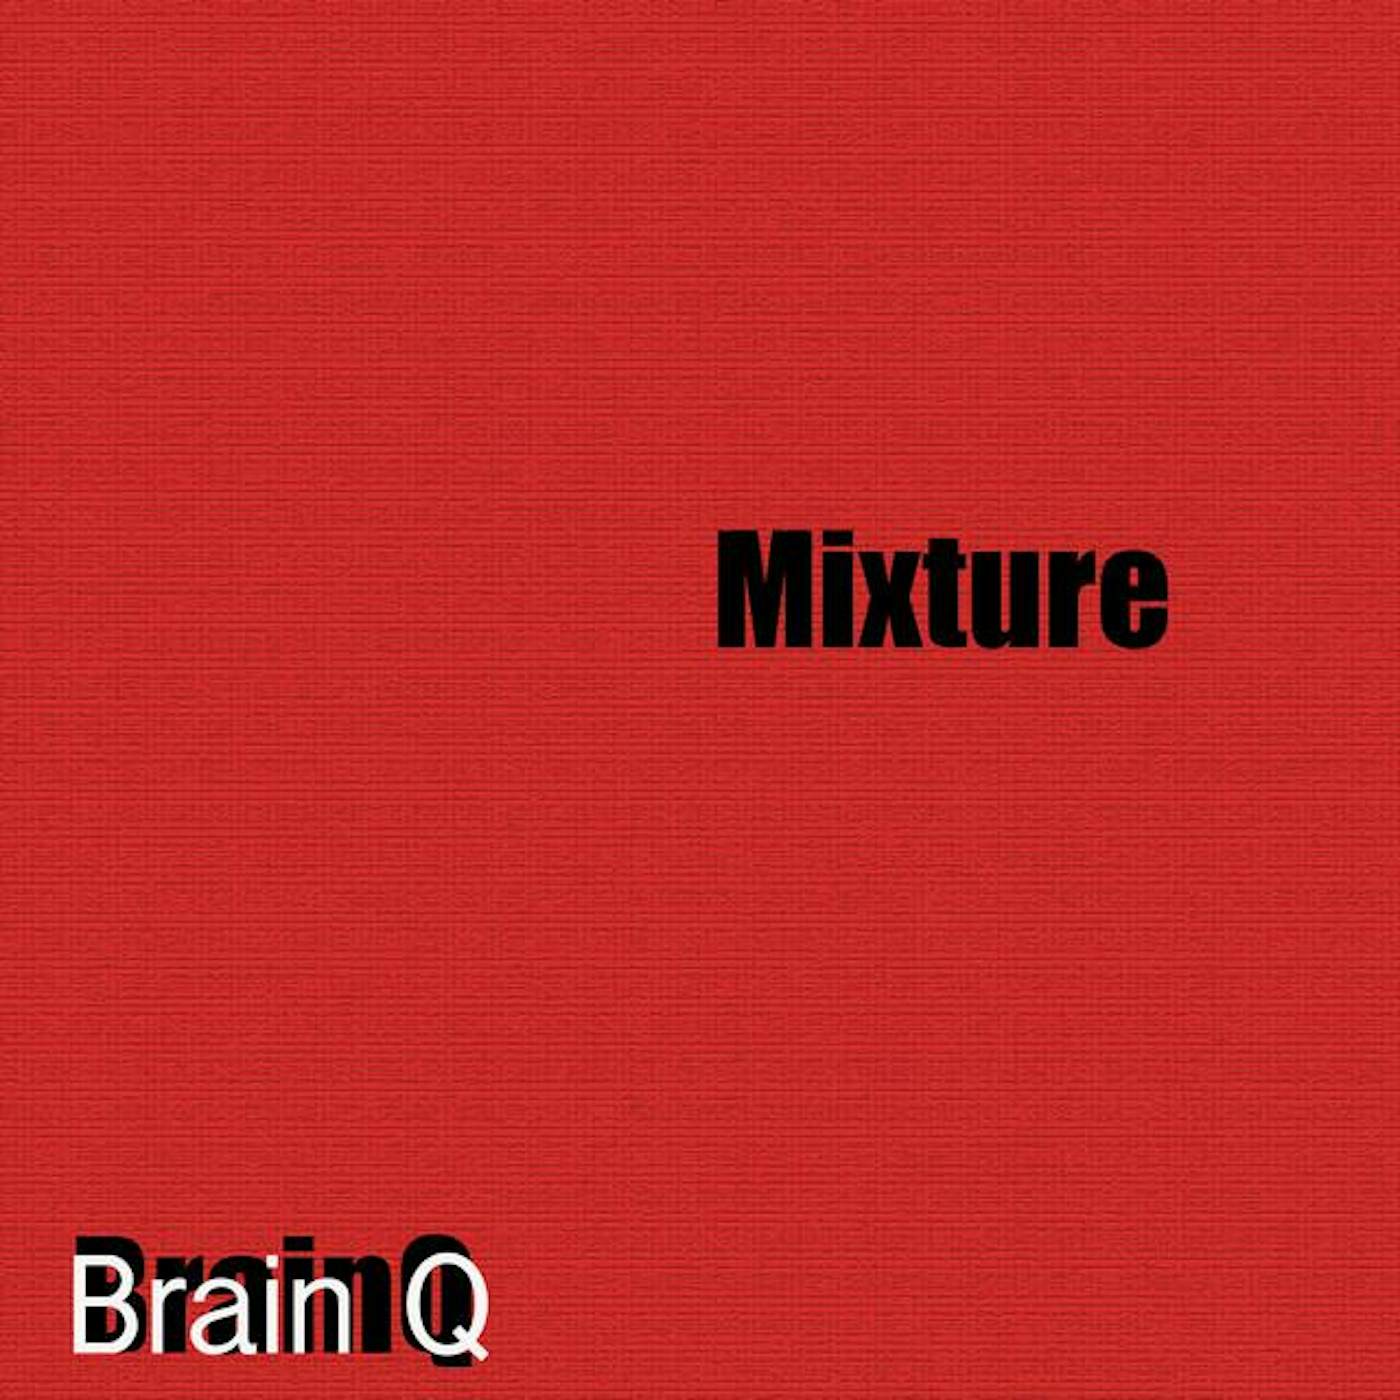 Brain Q